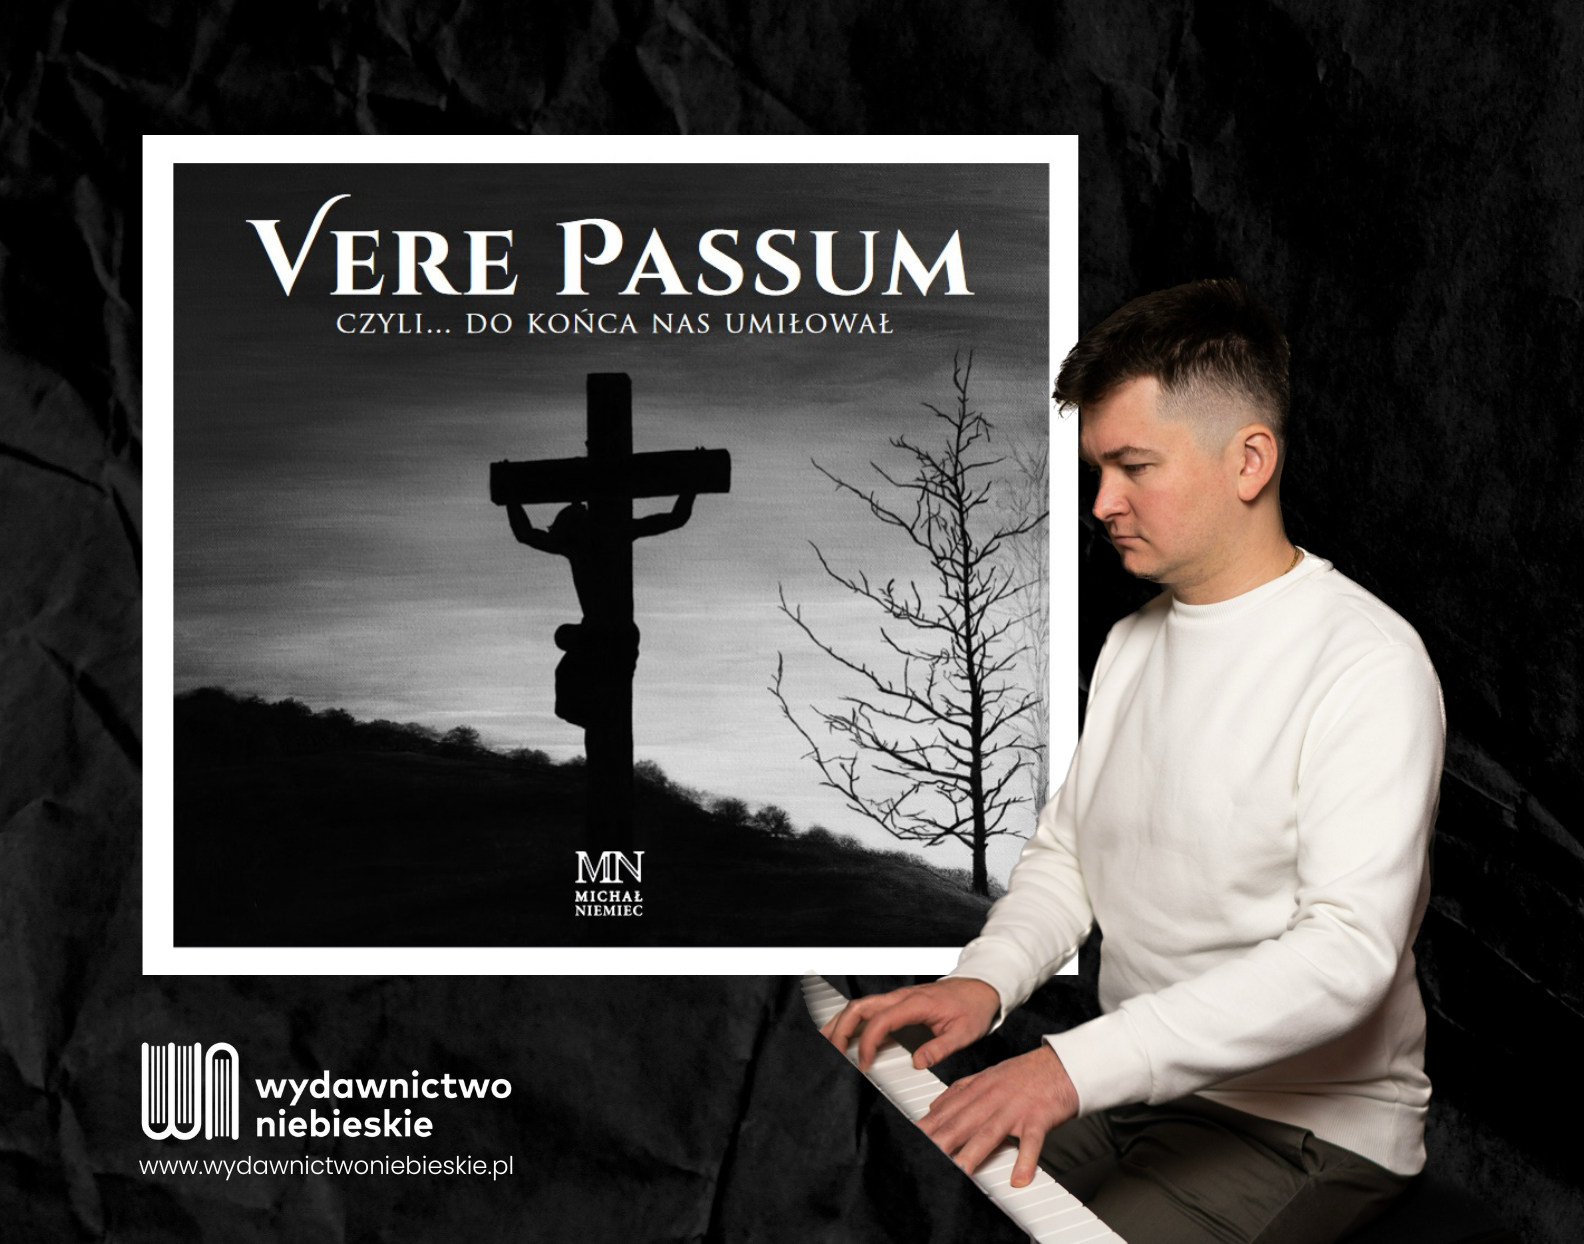 obraz dla “„Vere passum, czyli… do końca nas umiłował” – płyta z utworami pasyjnymi krakowskiego katechety i organisty”